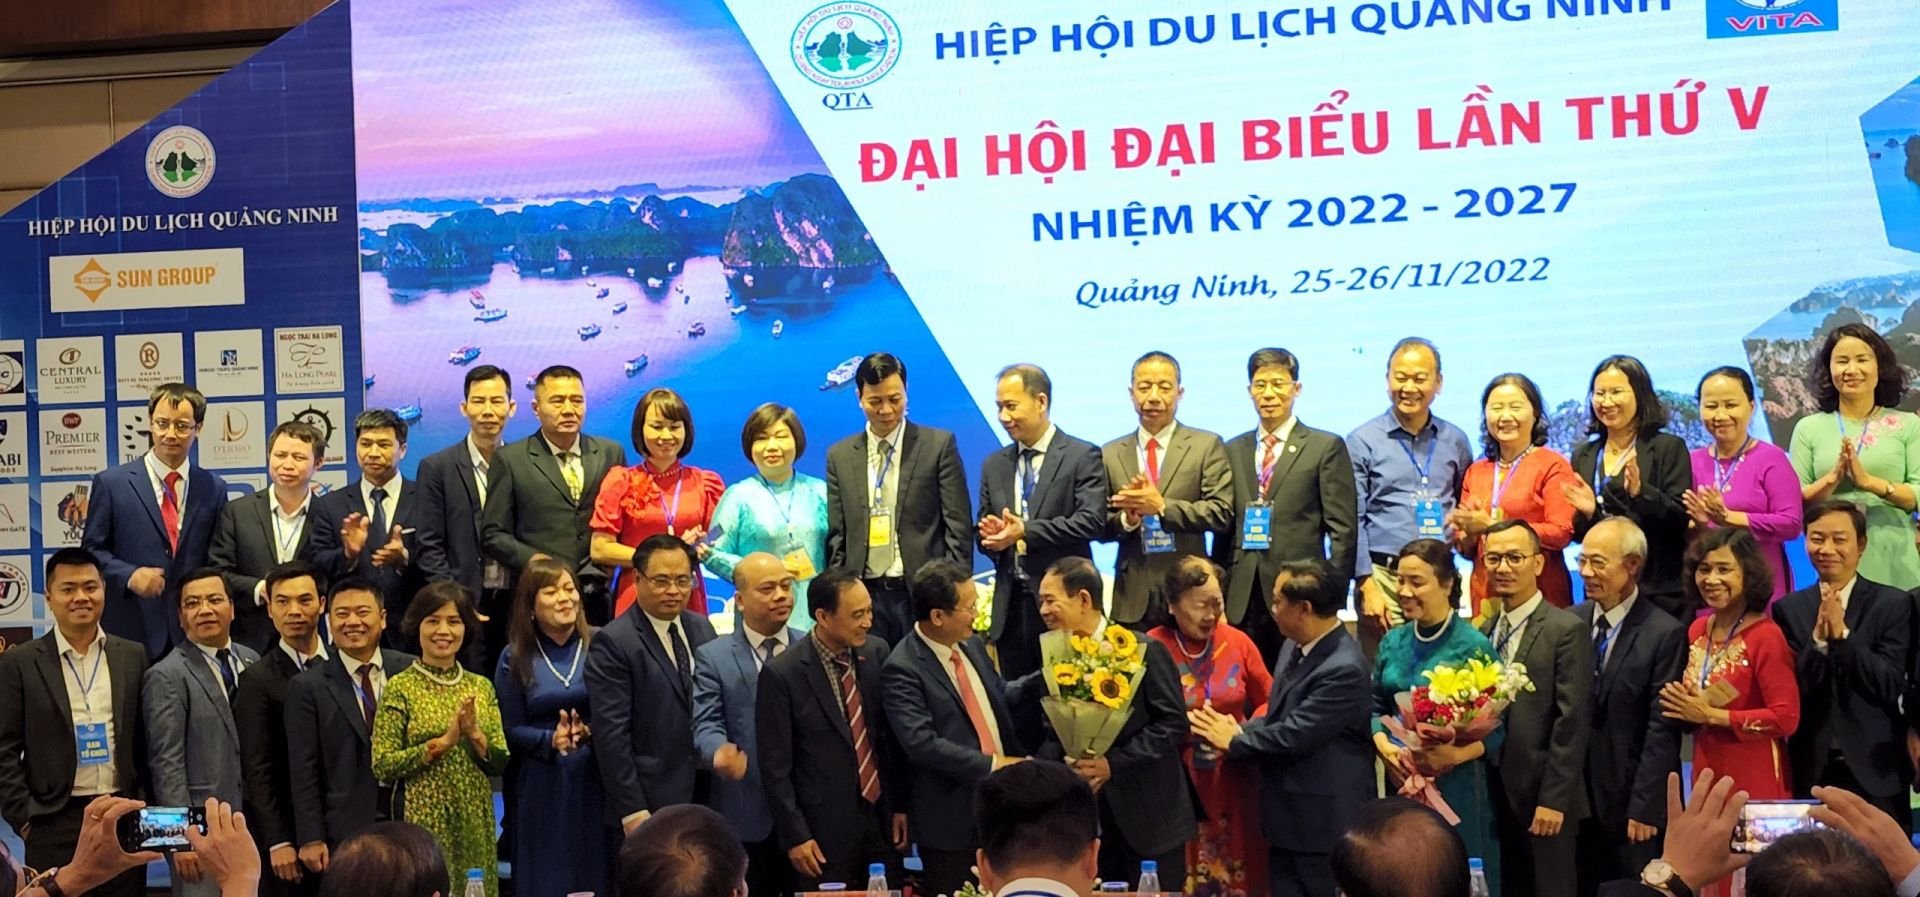 Ban chấp hành mới của hiệp hội du lịch tỉnh Quảng Ninh ra mắt